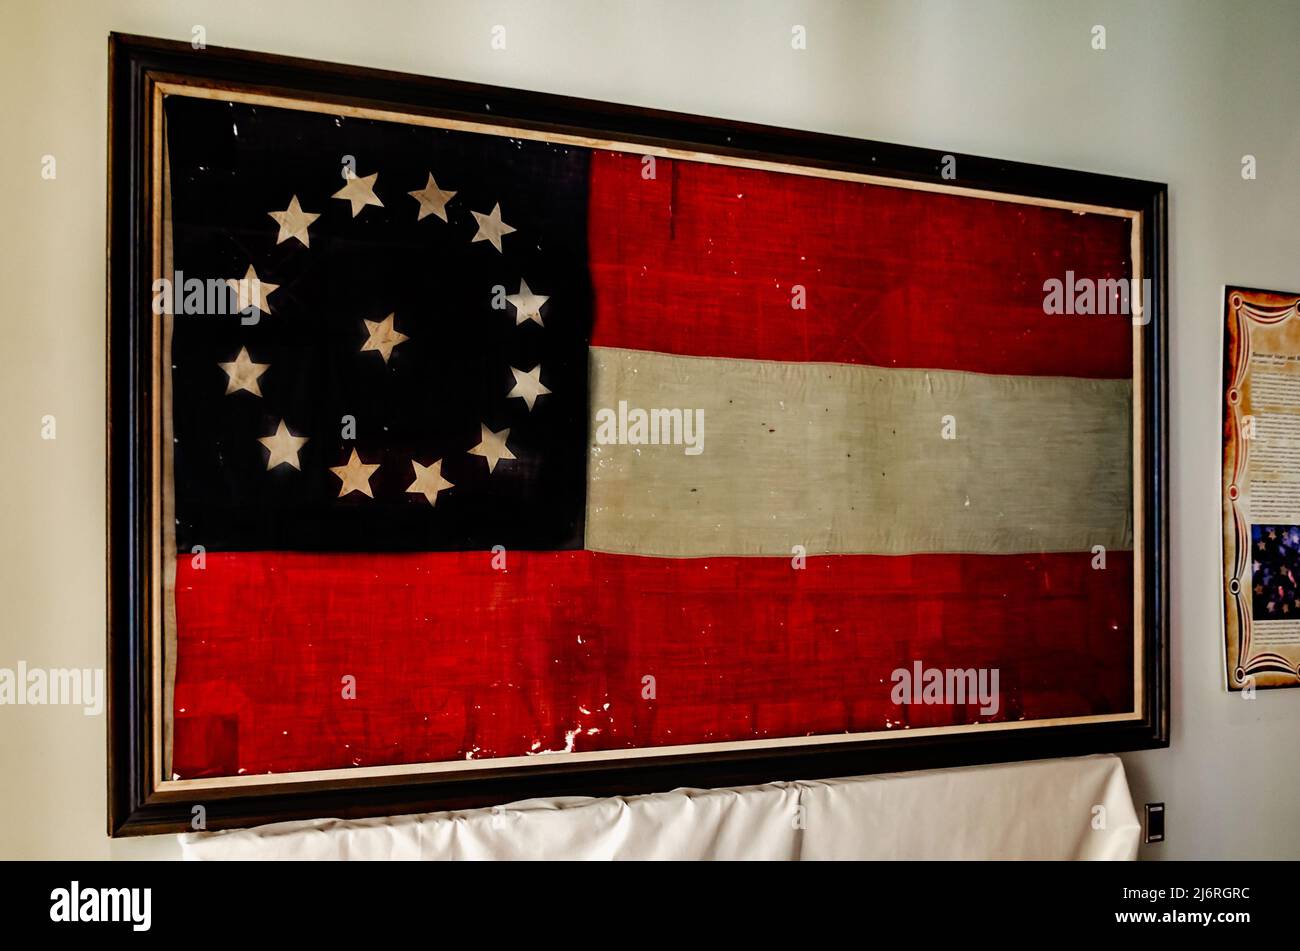 Die Stars and Bars-Flagge, die erste Nationalflagge der Konföderation, wird in der Jefferson Davis Presidential Library in Biloxi, Mississippi, ausgestellt. Stockfoto